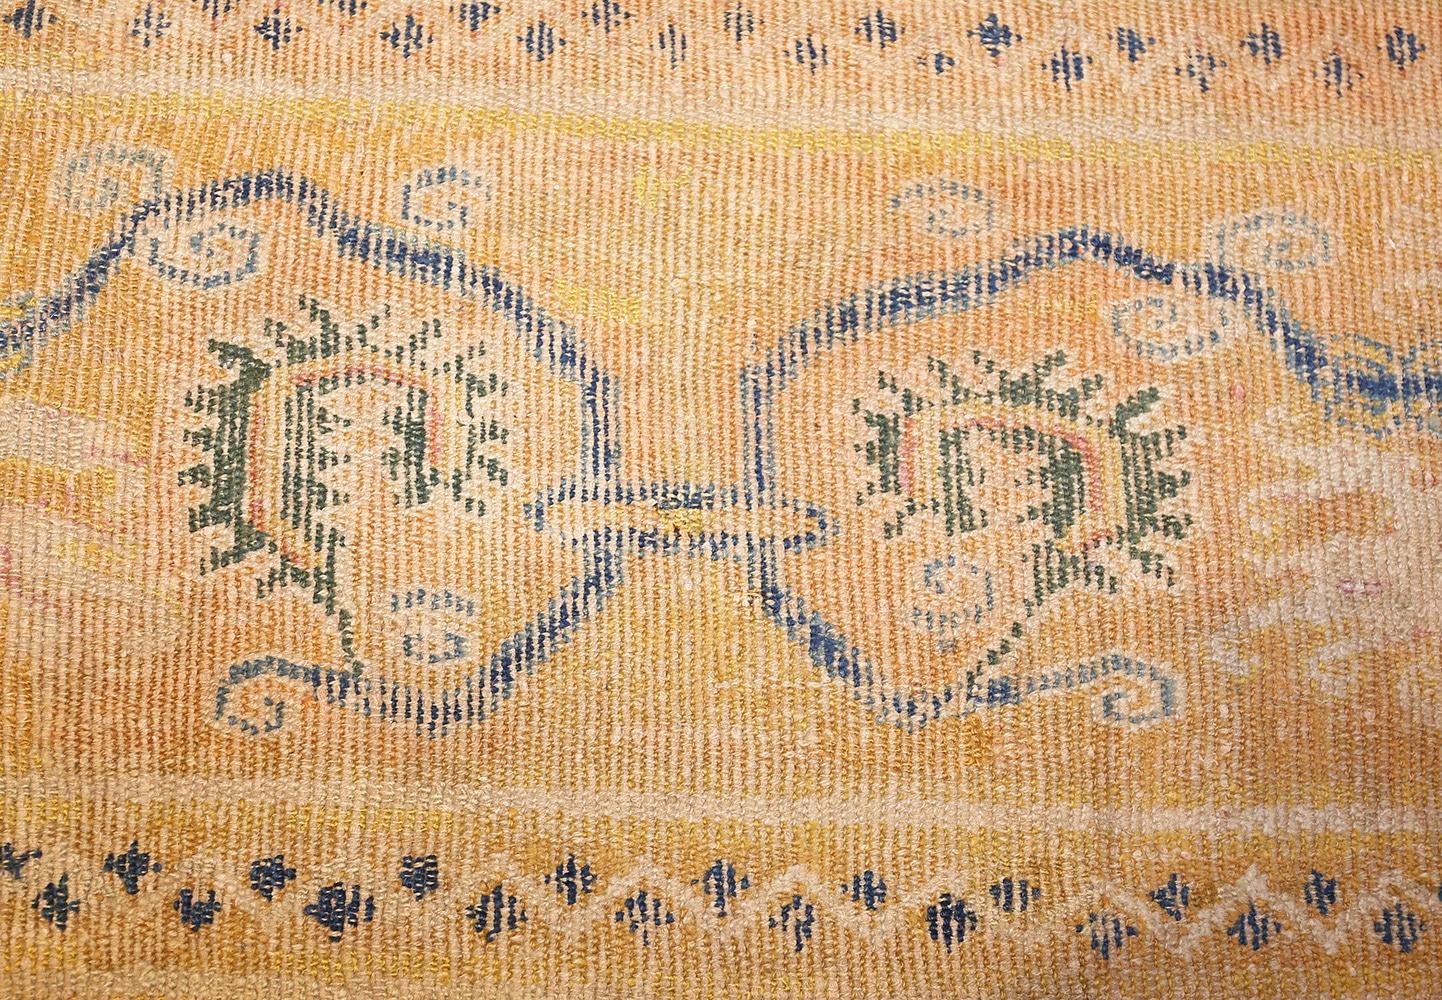 Wool Antique 17th Century Spanish Cuenca Carpet. Size: 10' x 11' (3.05 m x 3.35 m)